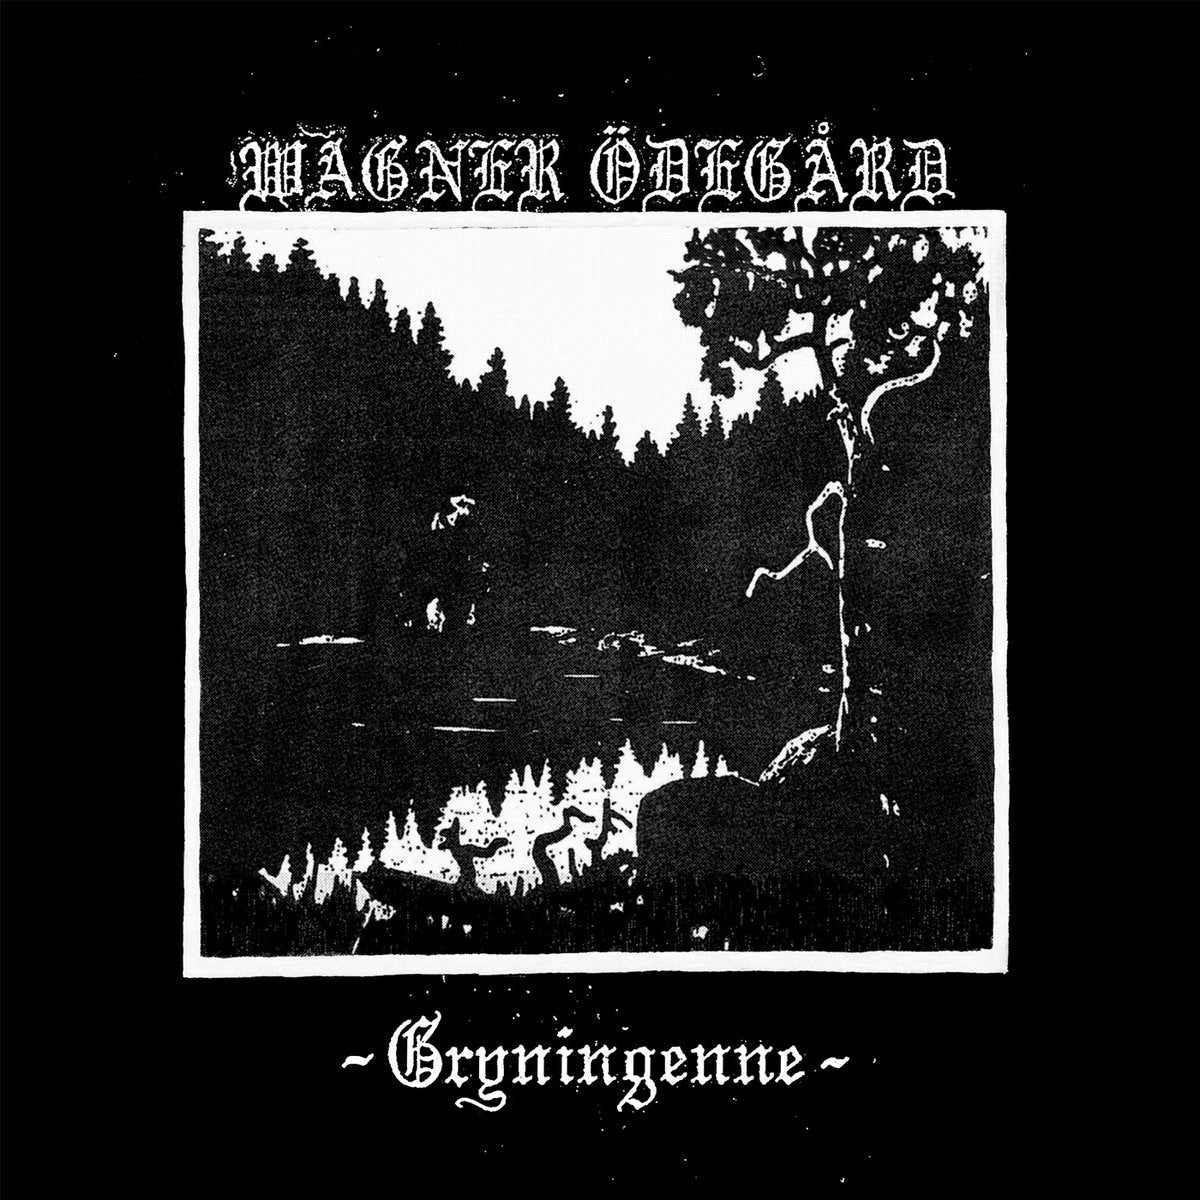 Wagner Ödegård (Swe) "Gryningenne" - 7" EP